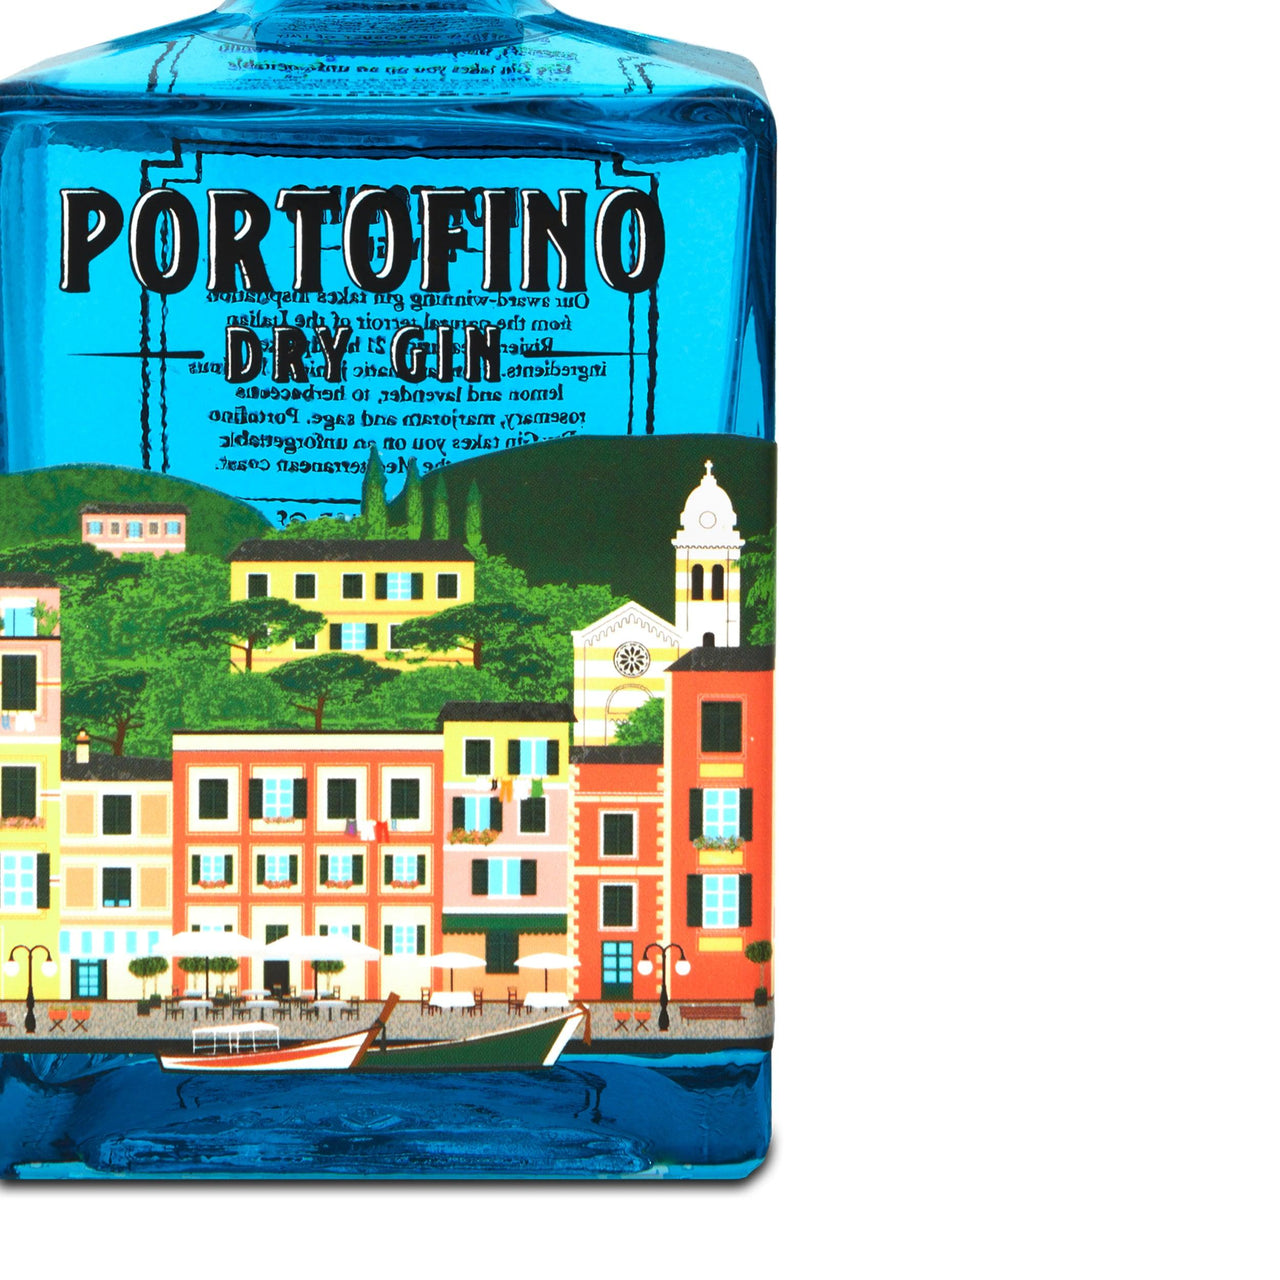 PORTOFINO DRY GIN PANORAMA BUNDLE - 500 ML - Portofino Dry Gin